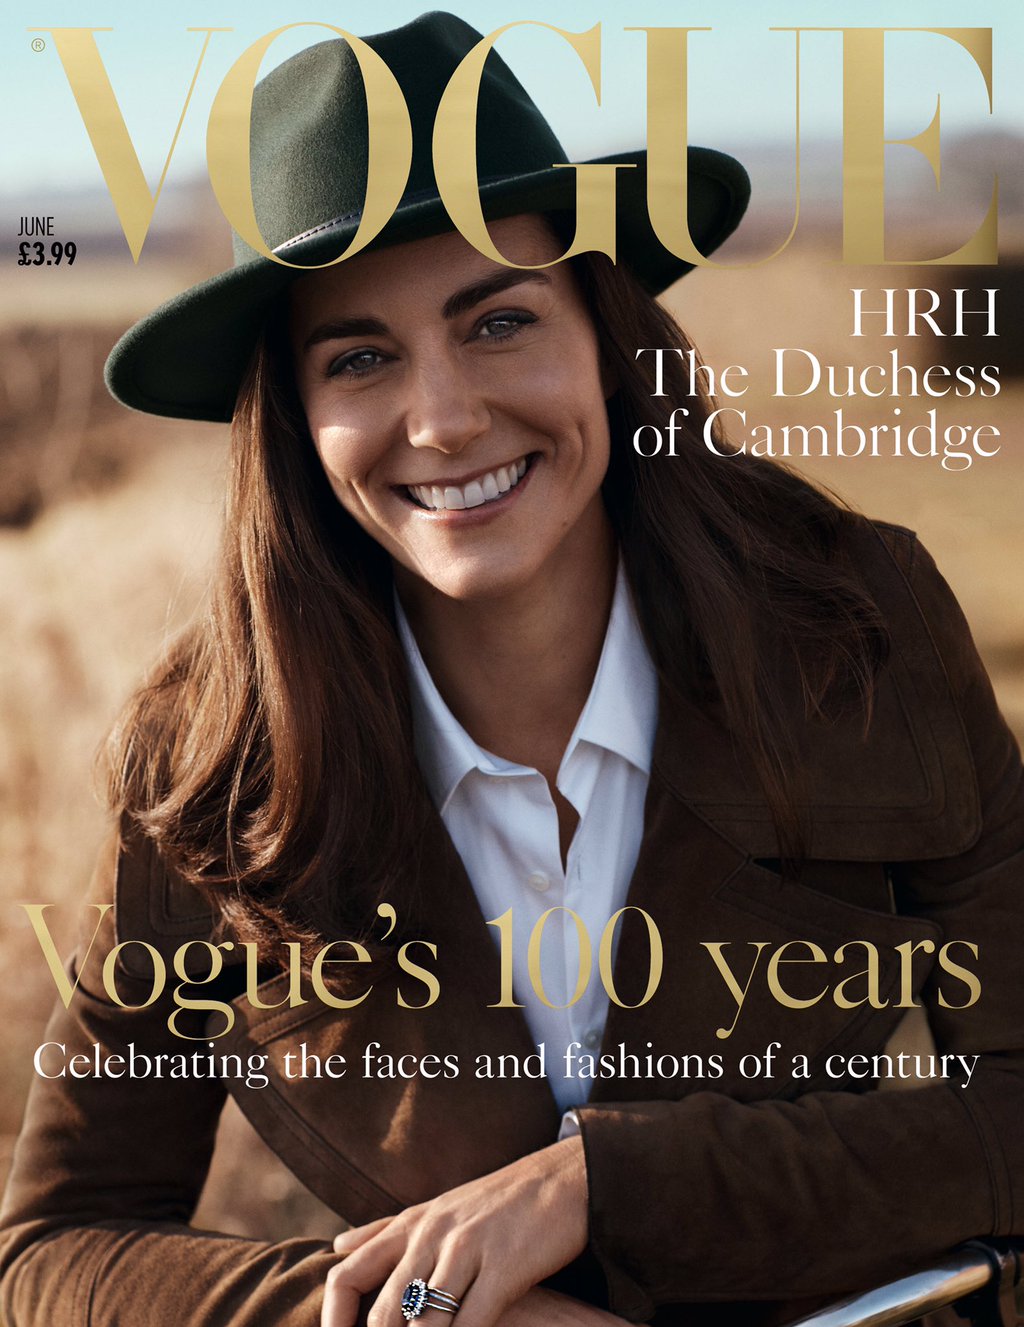 凱特王妃登上英國版Vogue雜誌封面_獻出時尚拍攝初體驗1.jpg